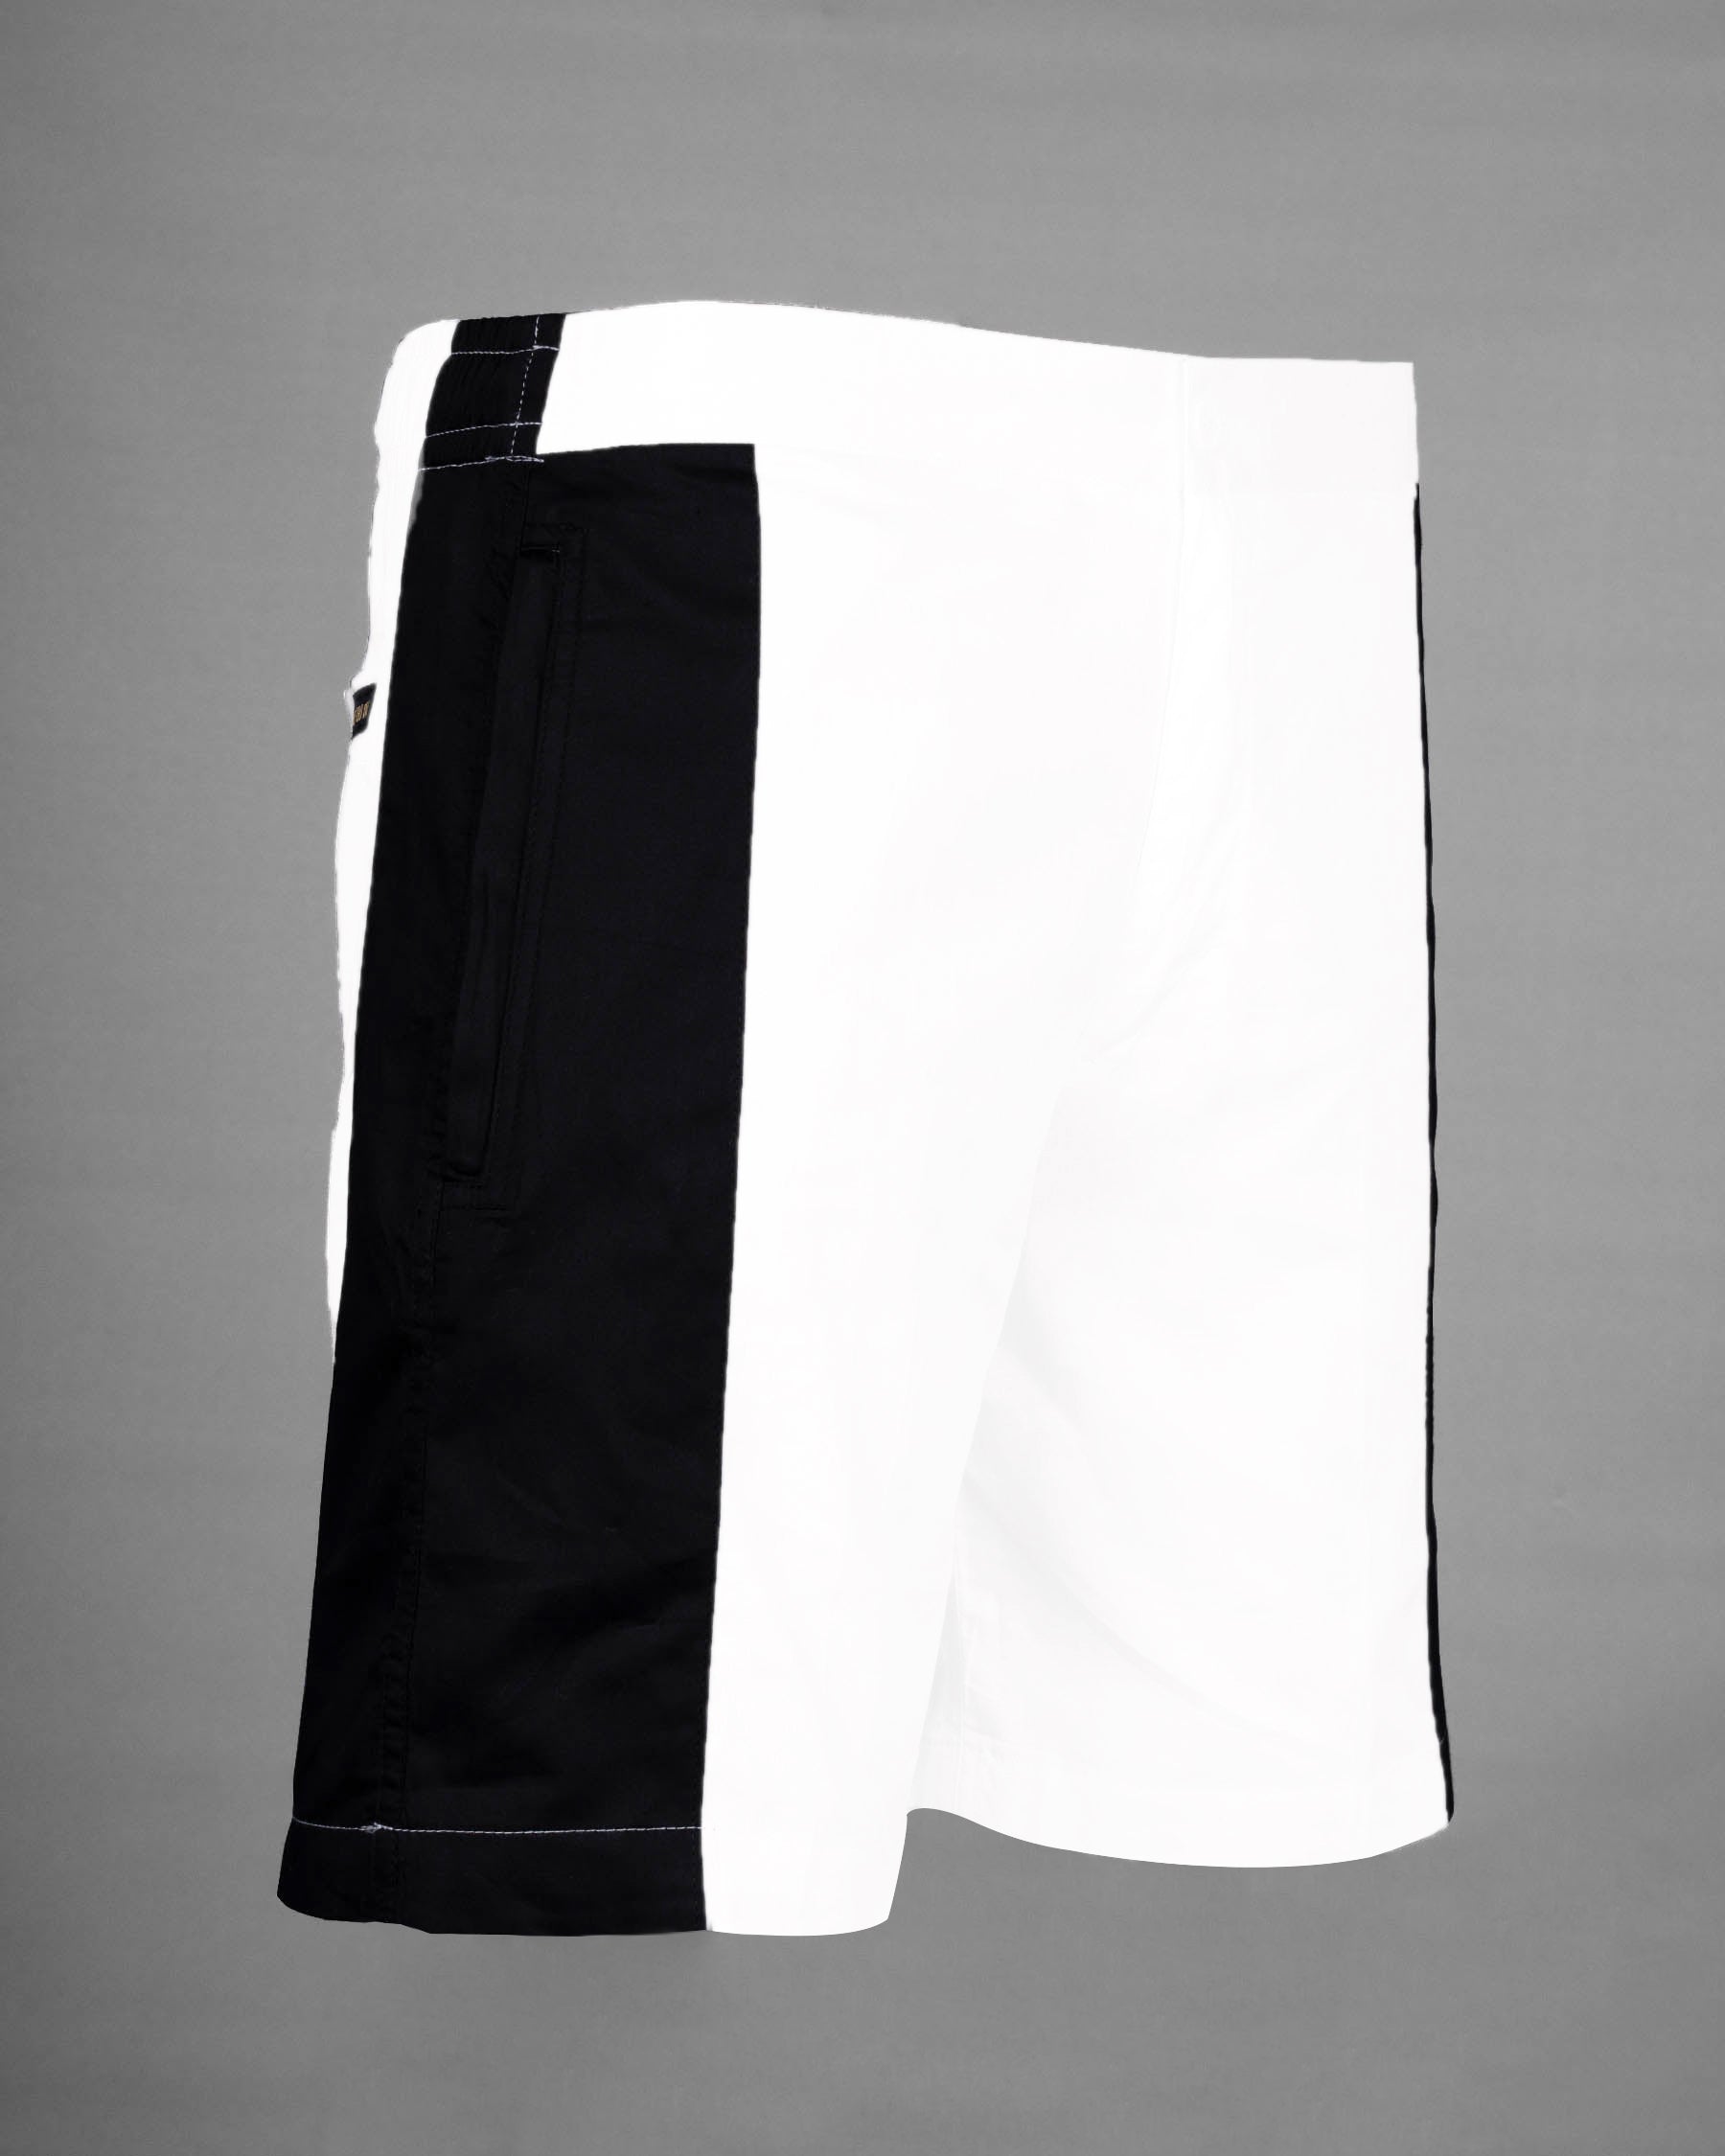 Bright White and Black Super Soft Premium Cotton Designer Shorts SR150-28, SR150-30, SR150-32, SR150-34, SR150-36, SR150-38, SR150-40, SR150-42, SR150-44